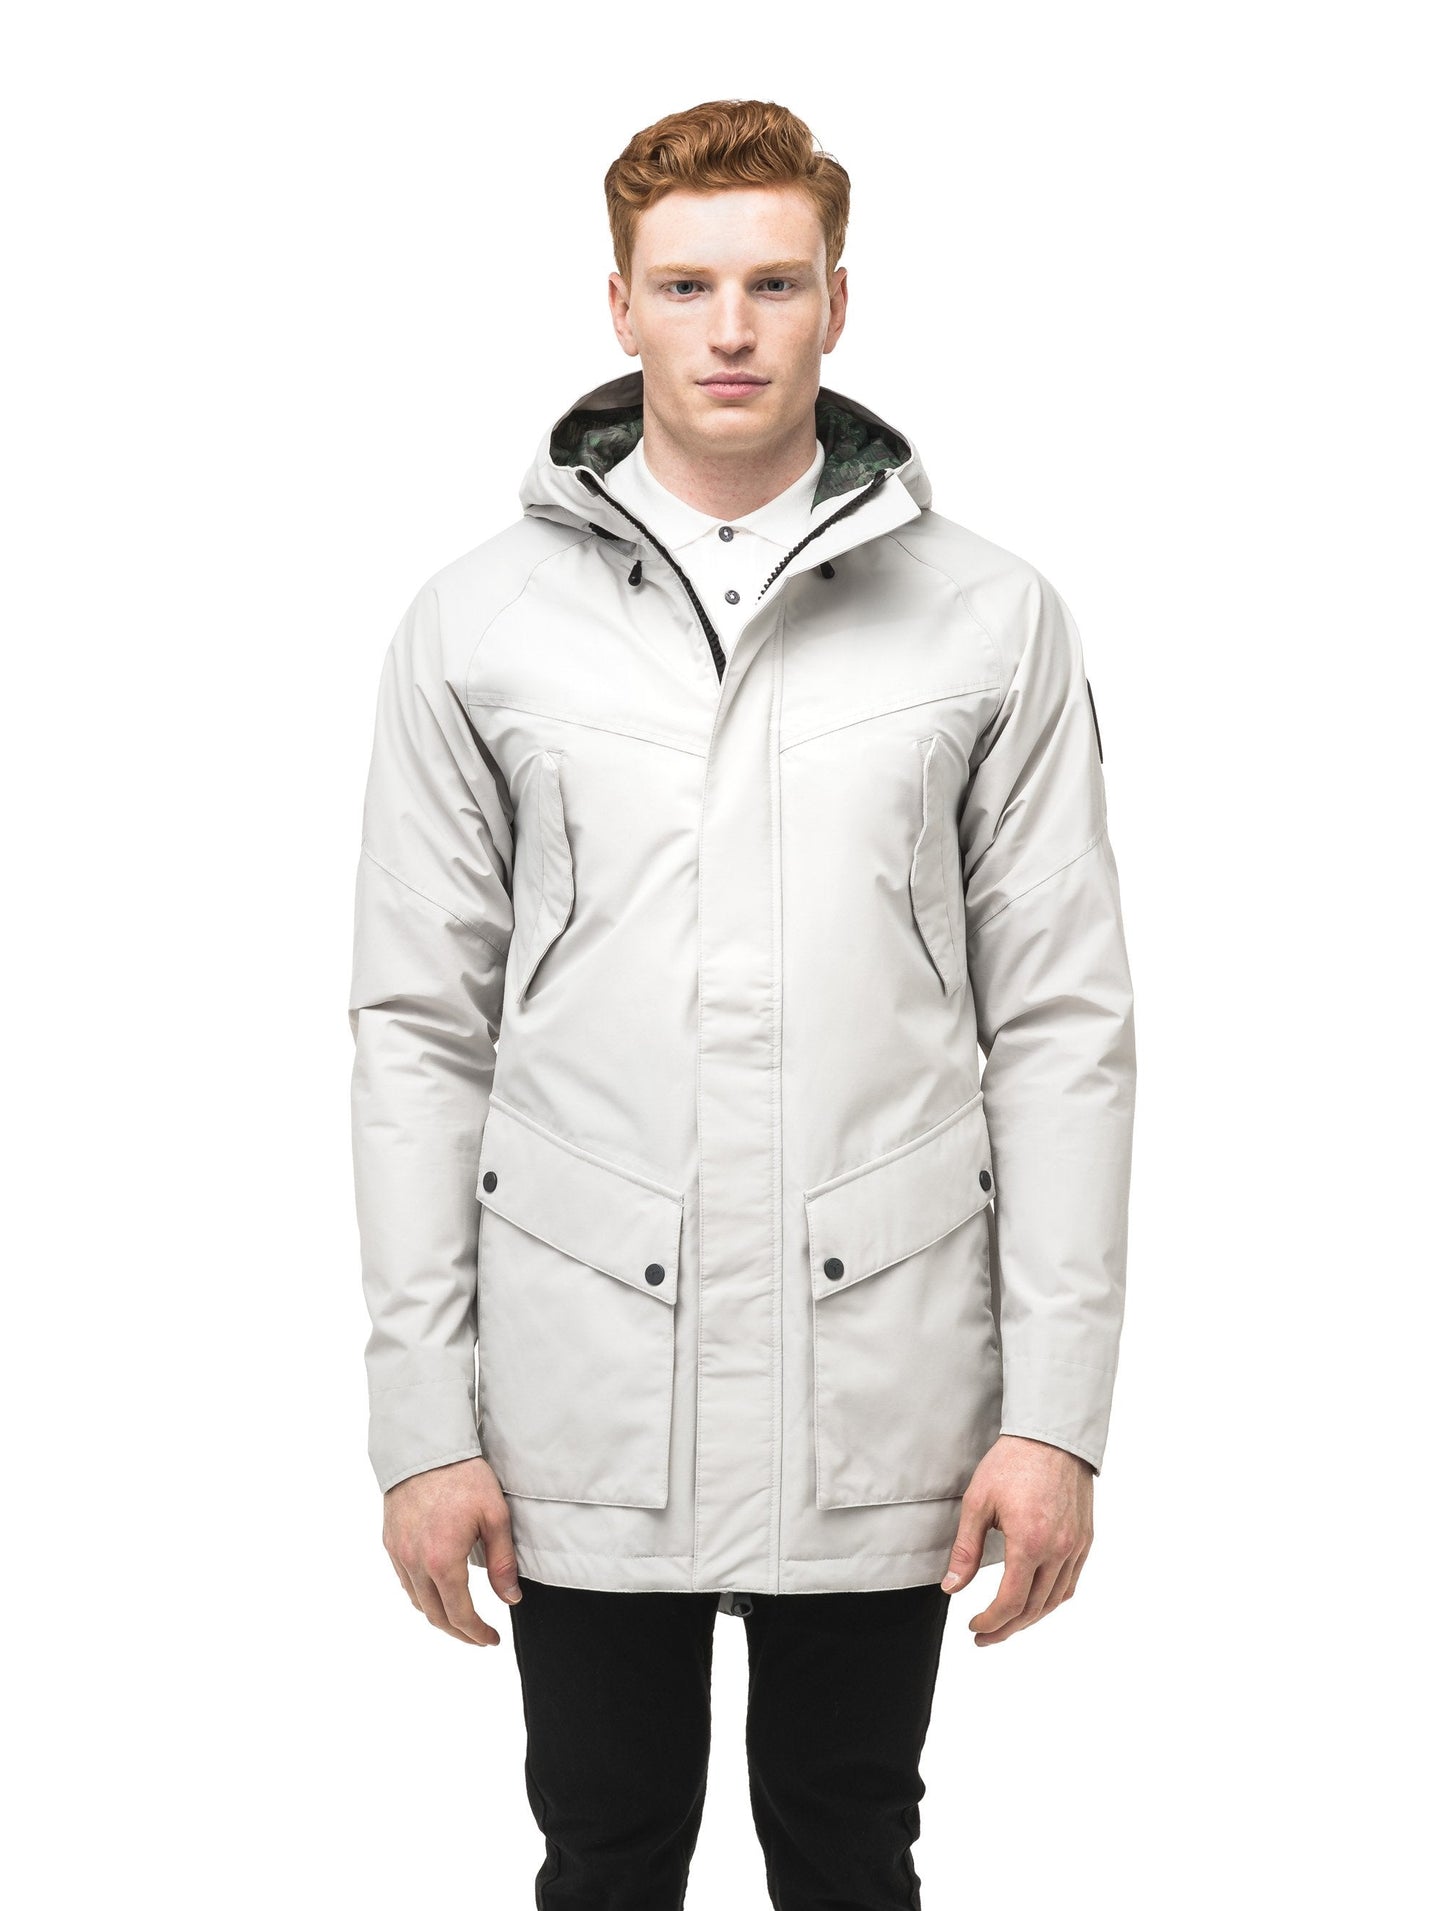 Men's hooded rain coat with hood in Light Grey